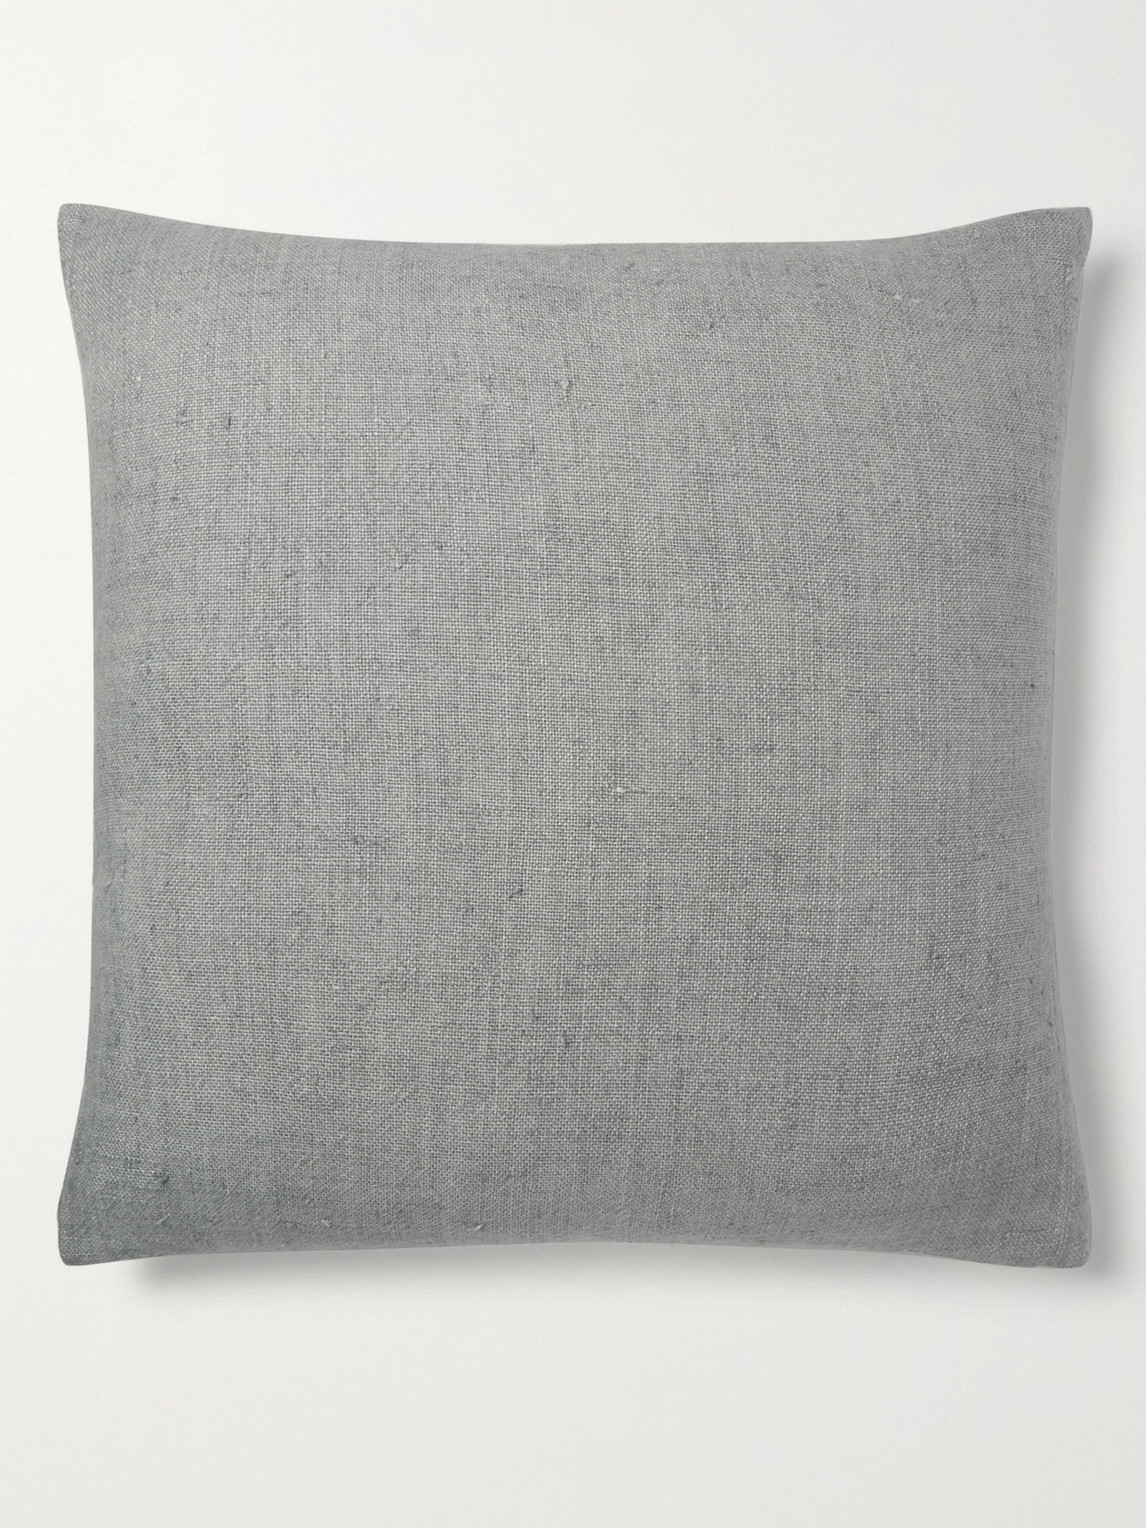 Roman & Williams Guild Linen Cushion Cover In Gray